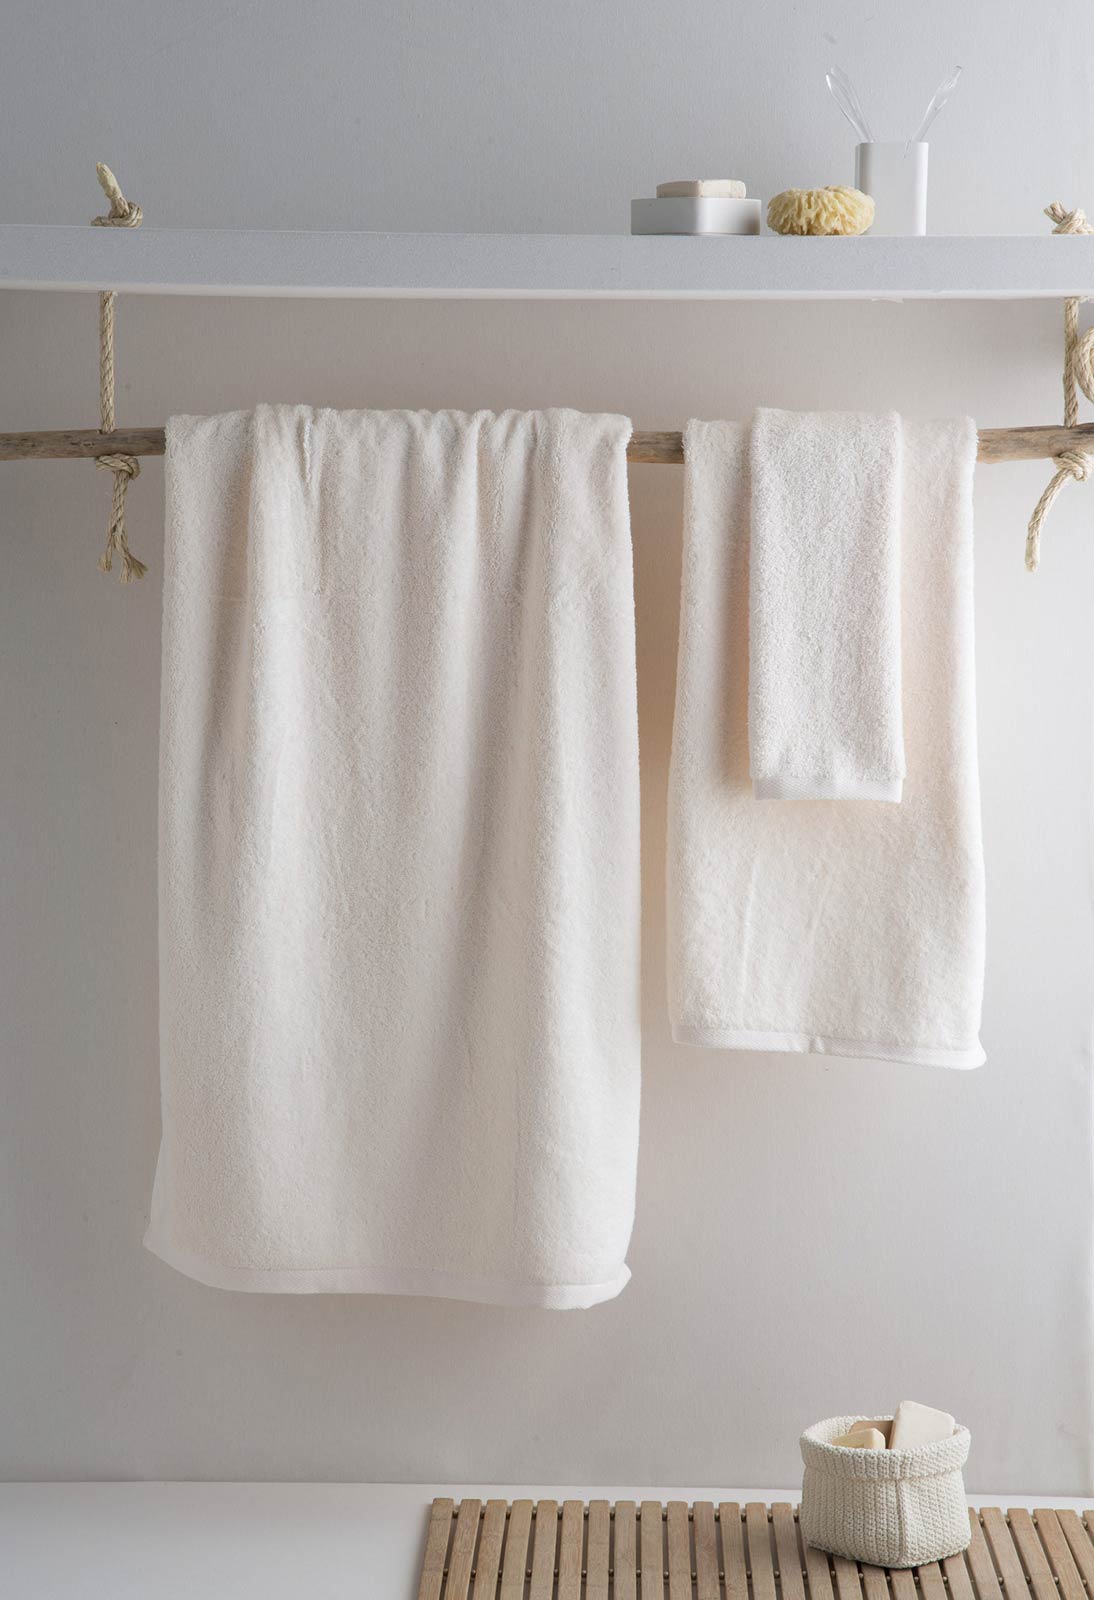  Juegos de toallas, Juego de toallas de baño, hombres y mujeres  39.4 * 72.8 in, toalla de baño de algodón para hombres, mujeres y adultos,  suave y cómoda (Color : D